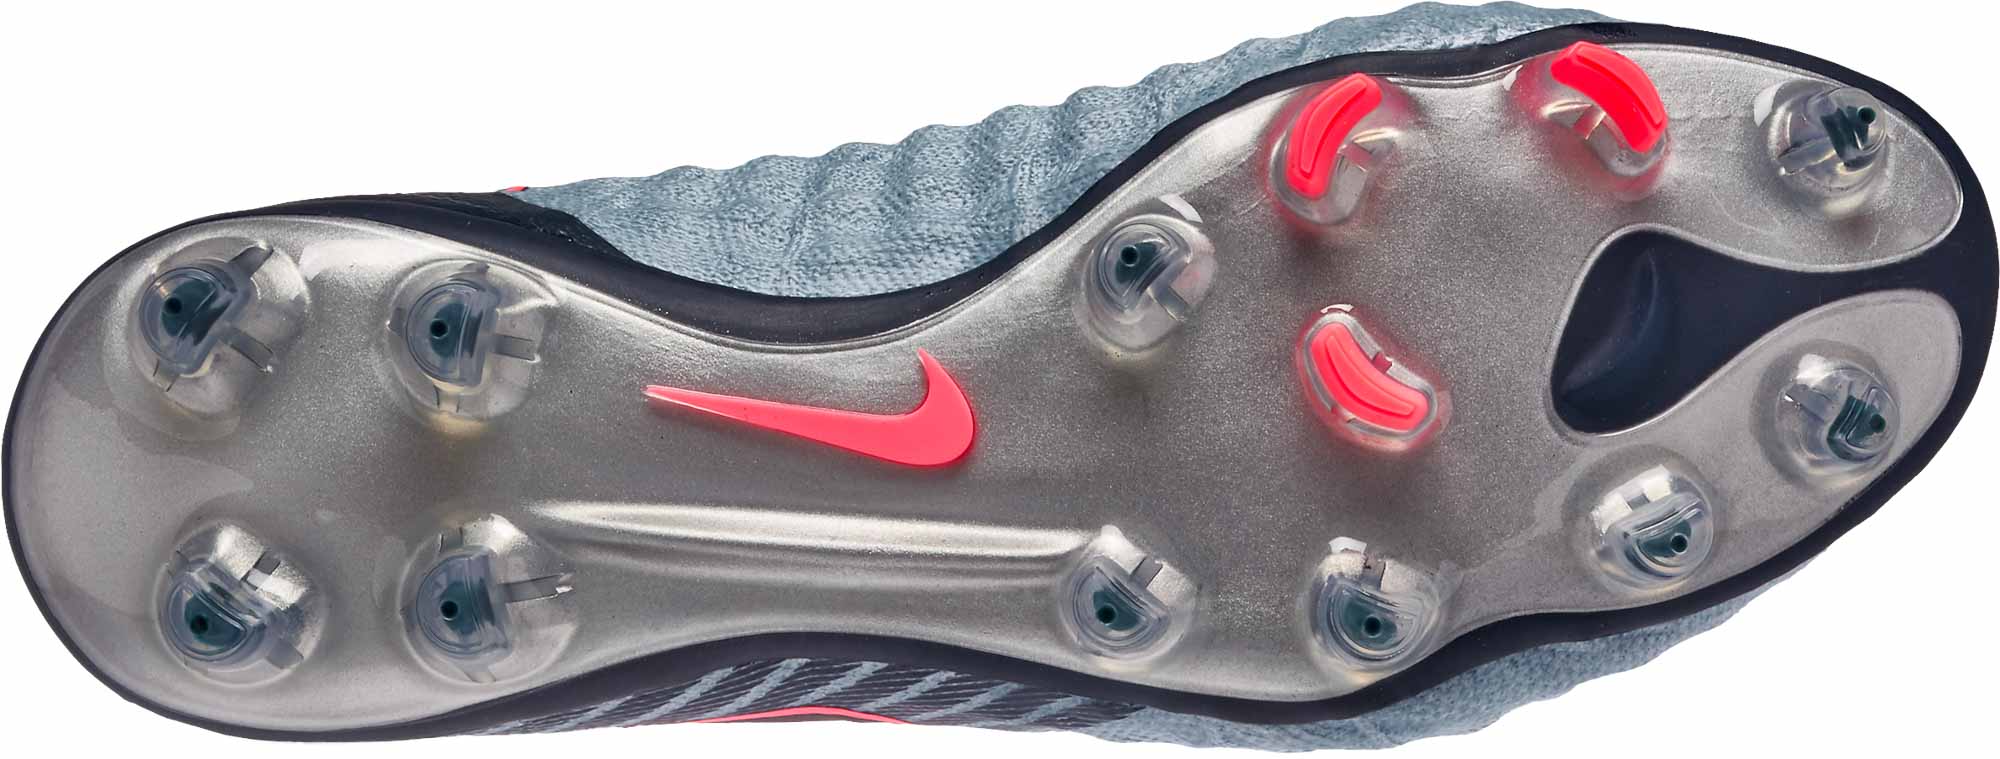 JUAL Sepatu Futsal Nike Replika Magista Kuning Gerigi